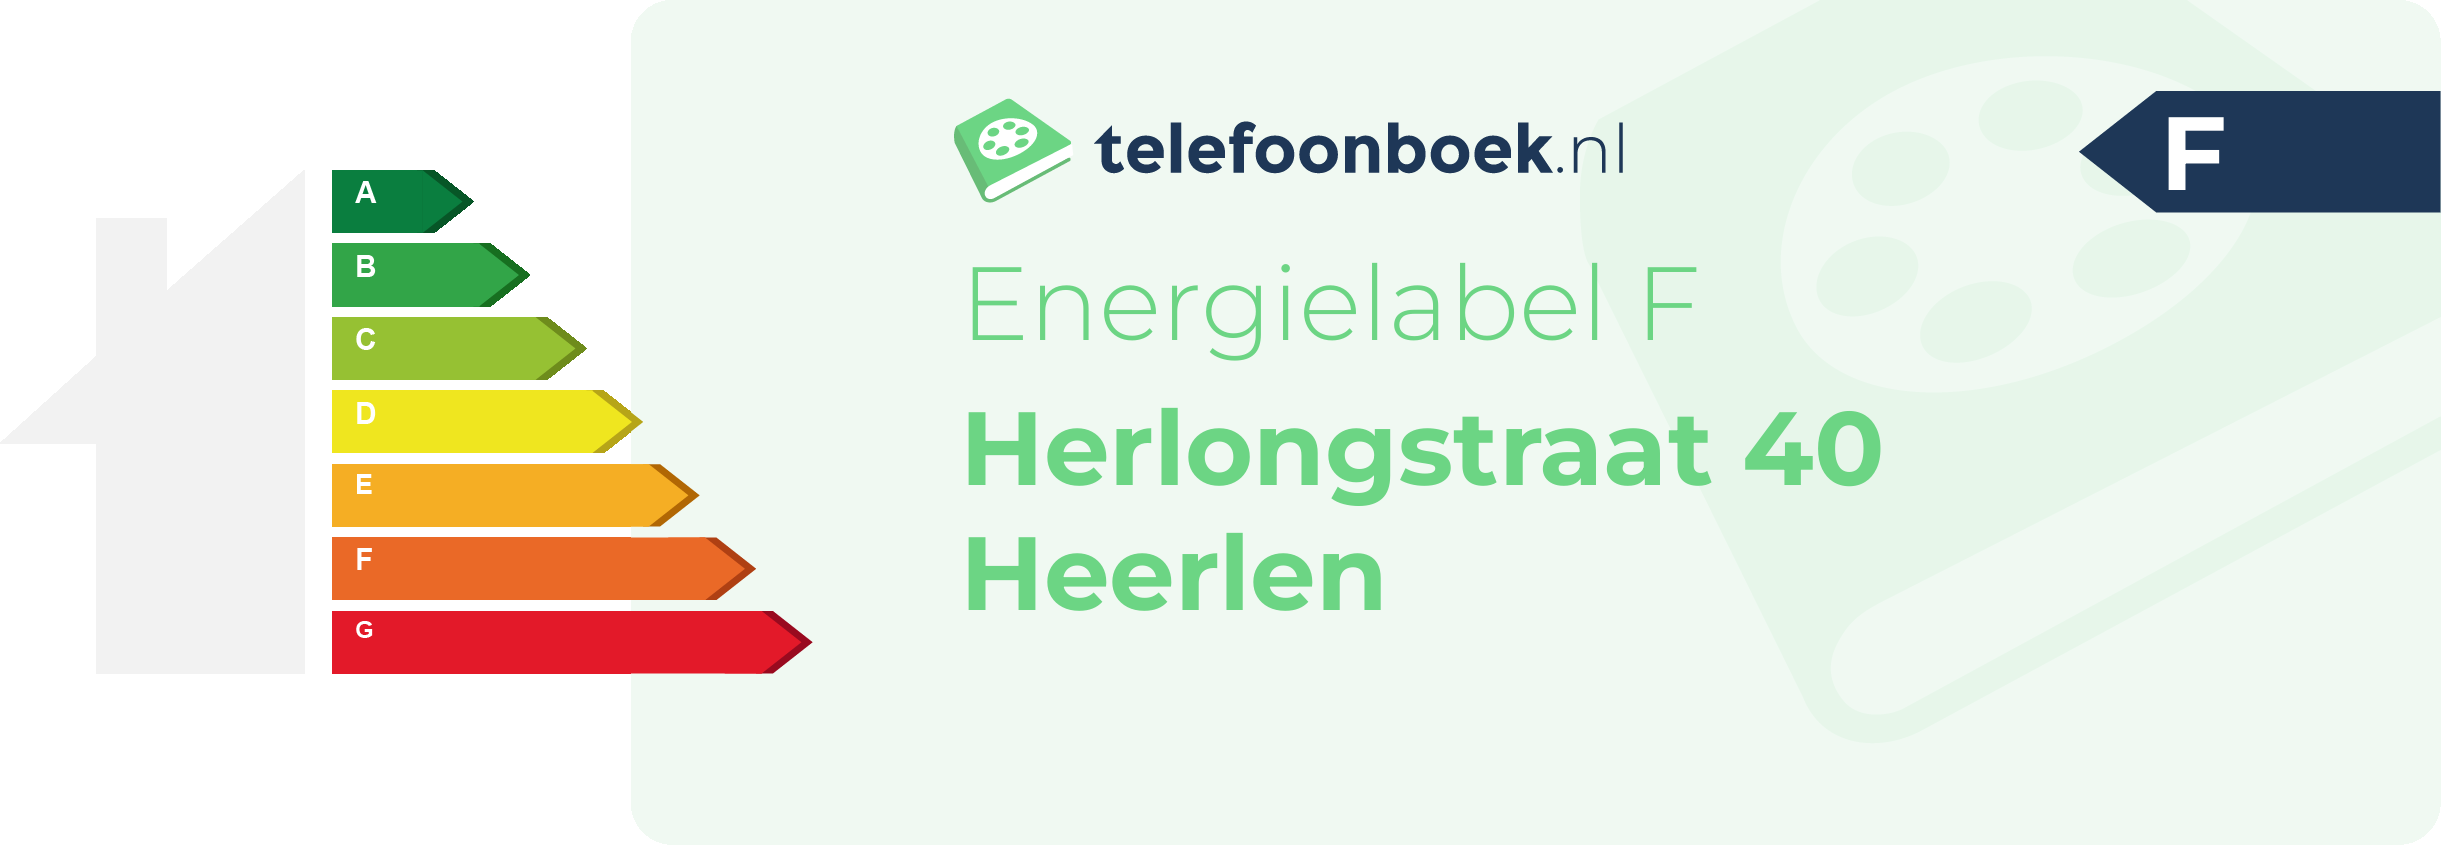 Energielabel Herlongstraat 40 Heerlen